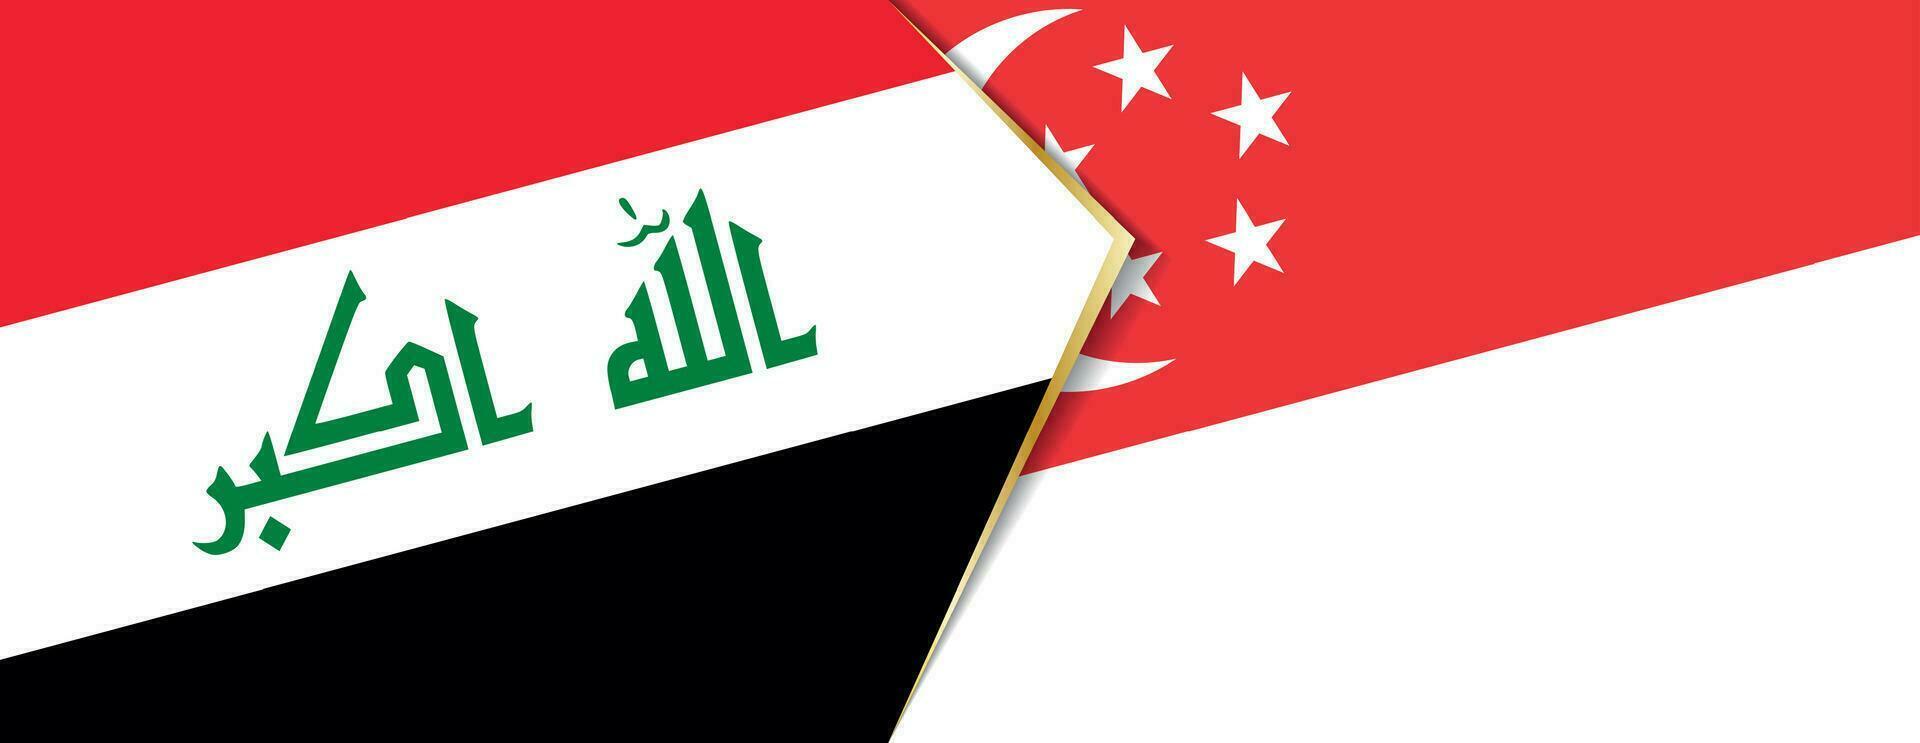 Irak und Singapur Flaggen, zwei Vektor Flaggen.